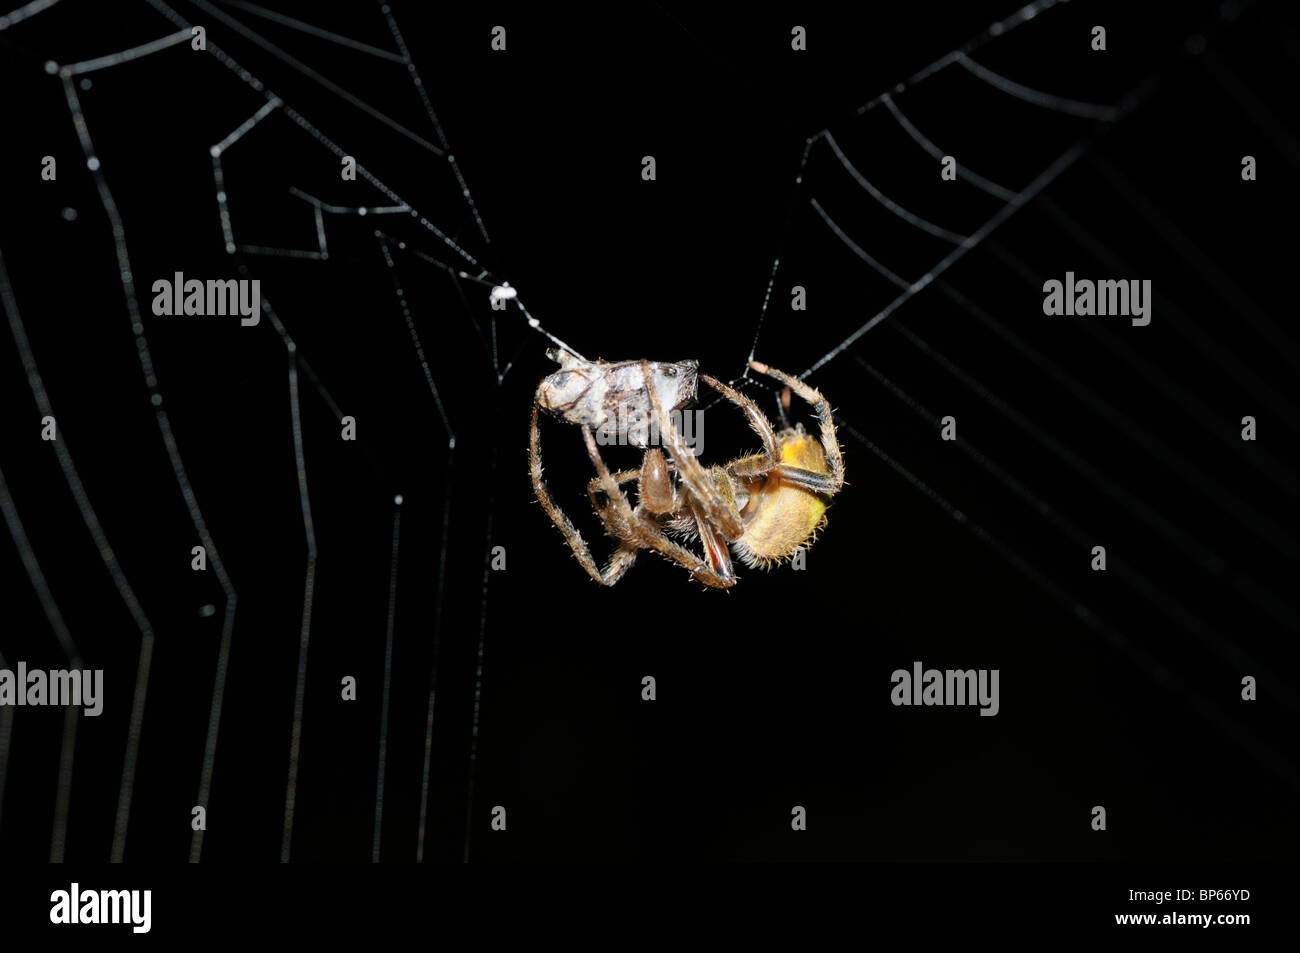 Il ragno tropicale con la preda che è stata immobilizzata e avvolto in seta Foto Stock